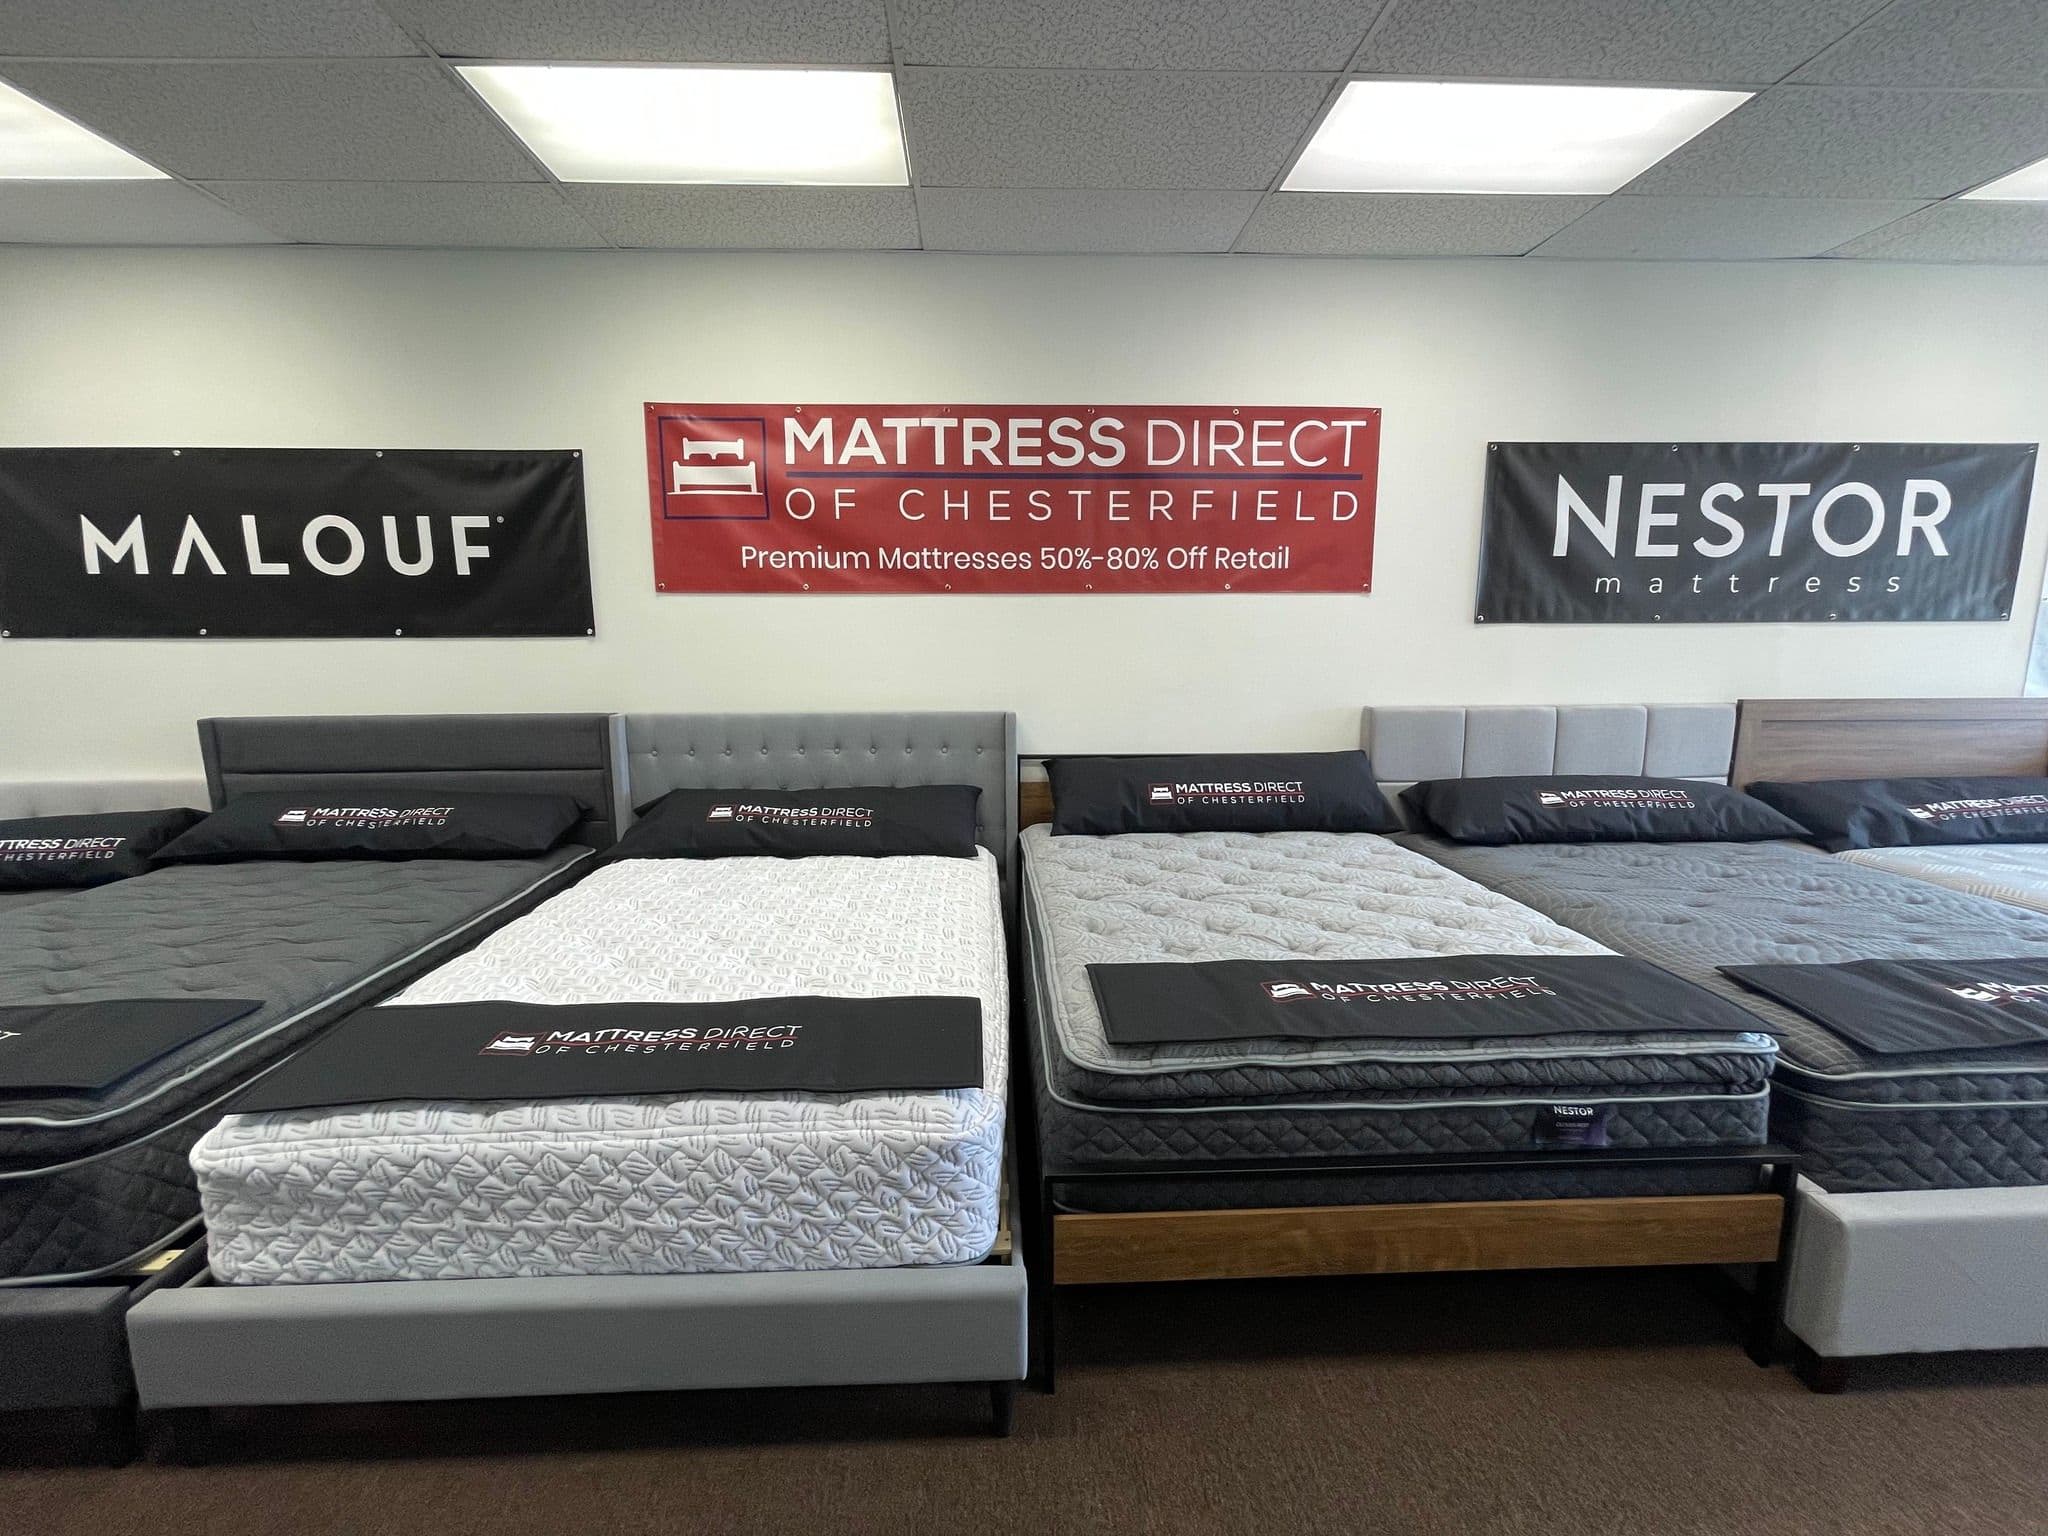 Mattress Direct of Chesterfield - Richmond, VA, US, adj bed frames
